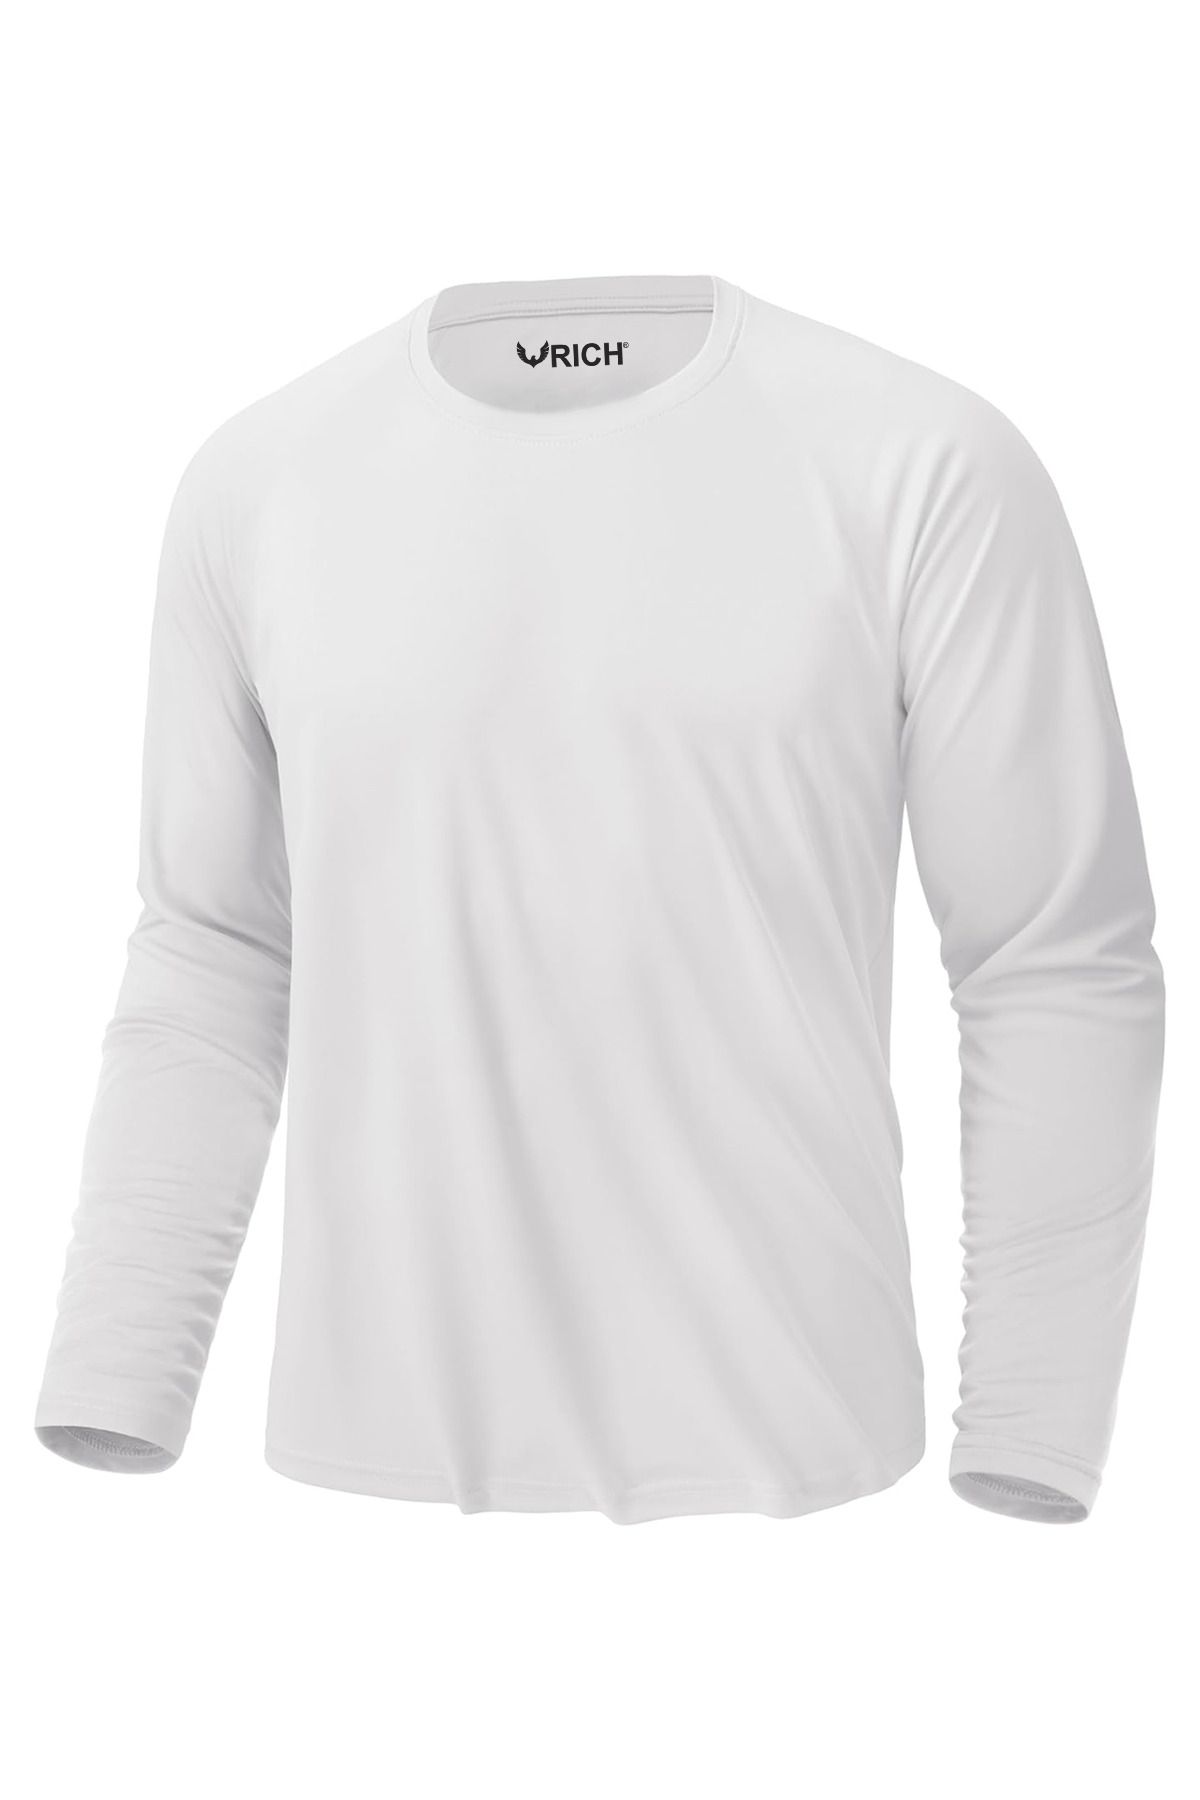 Rich Erkek Beyaz Basic Uzun Kollu Tişört Sporcu Body T-shirt